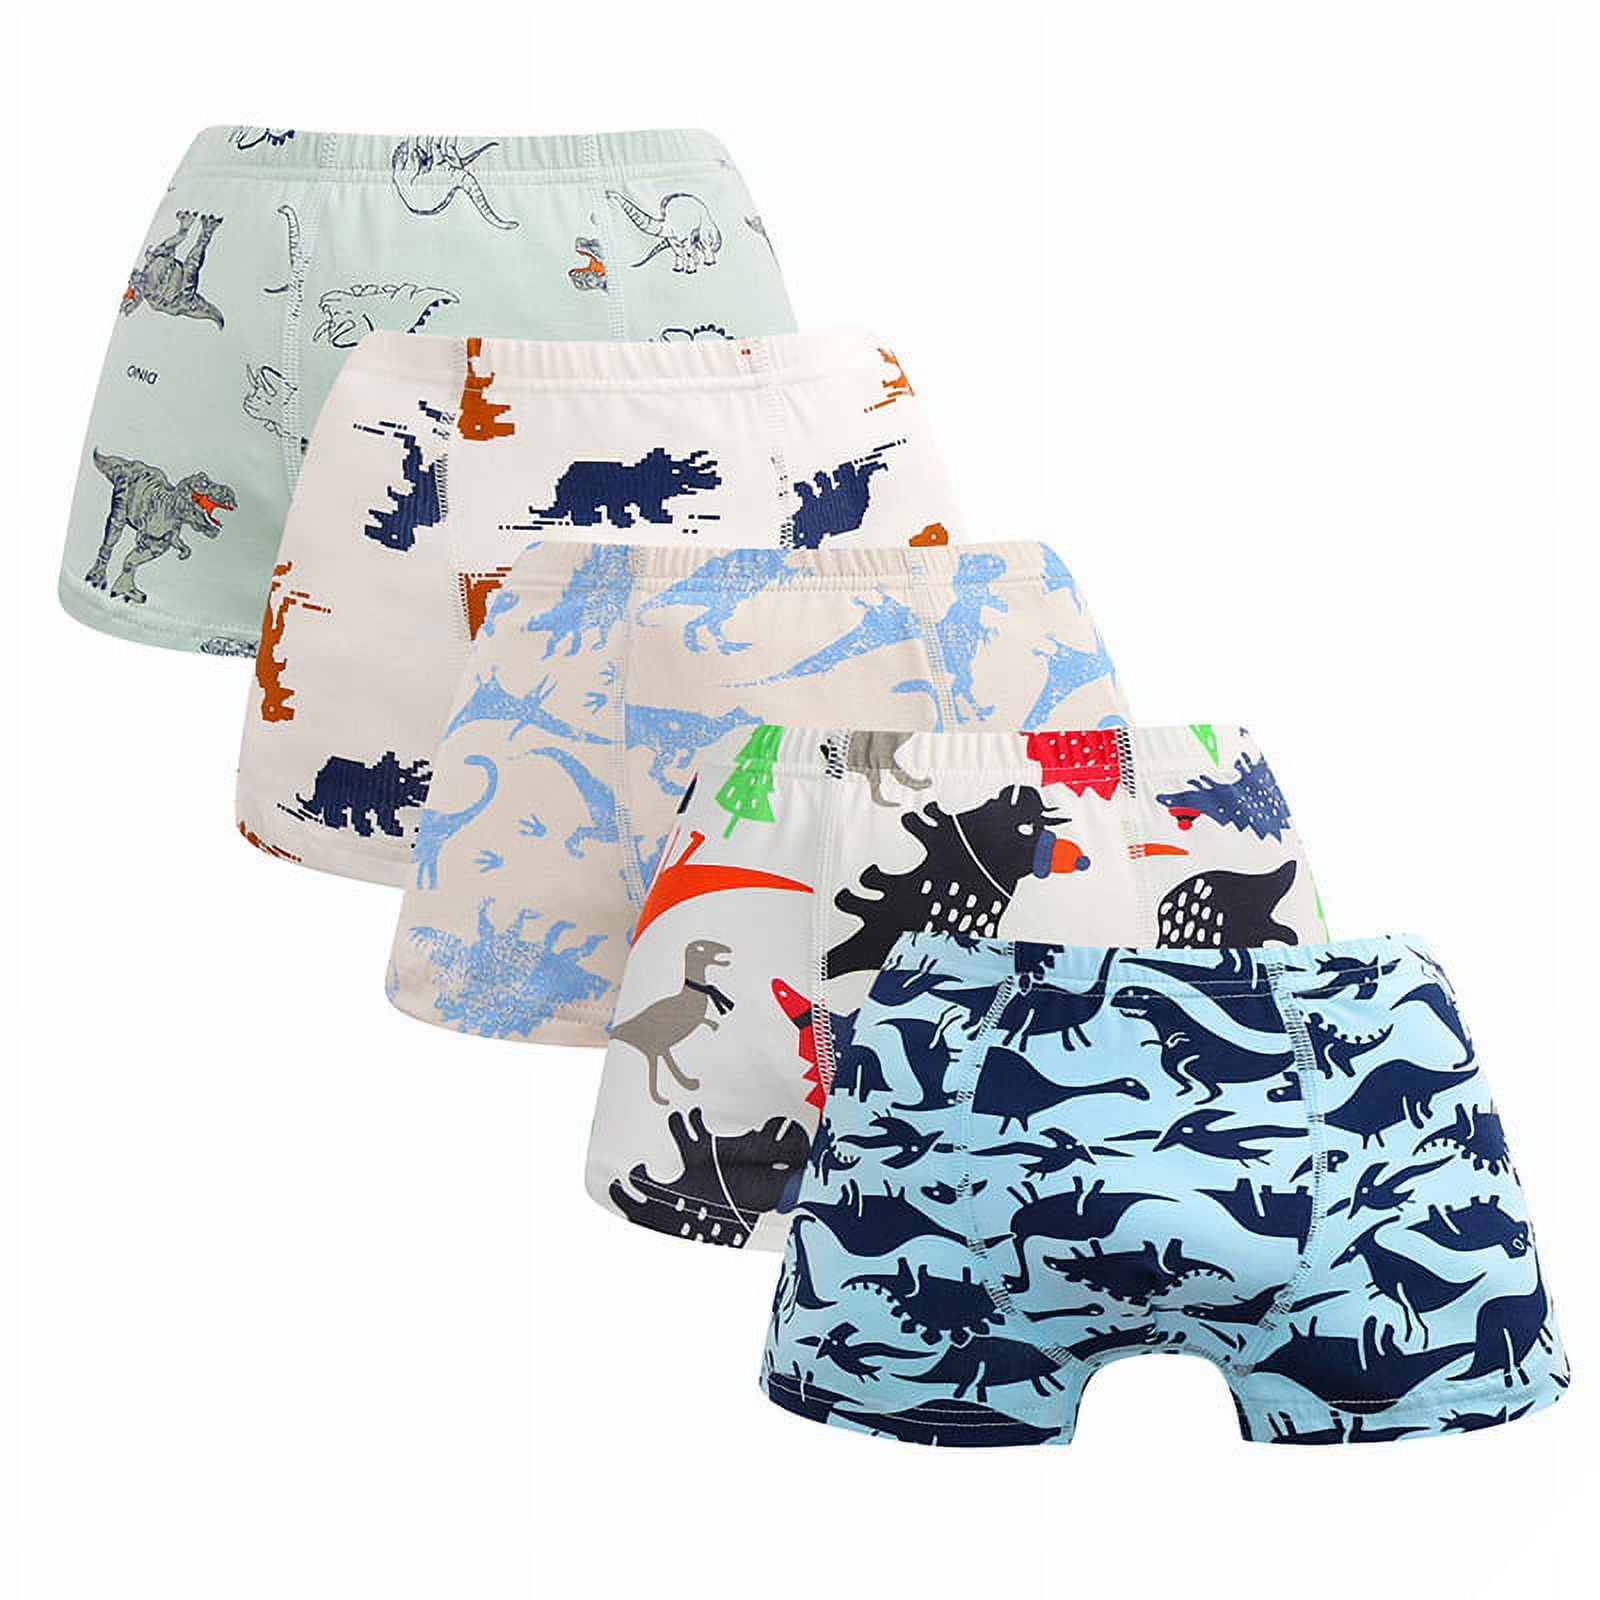 Boboking Baby Soft Cotton Underwear Little Girls'Briefs Toddler Undies :  : Clothing, Shoes & Accessories